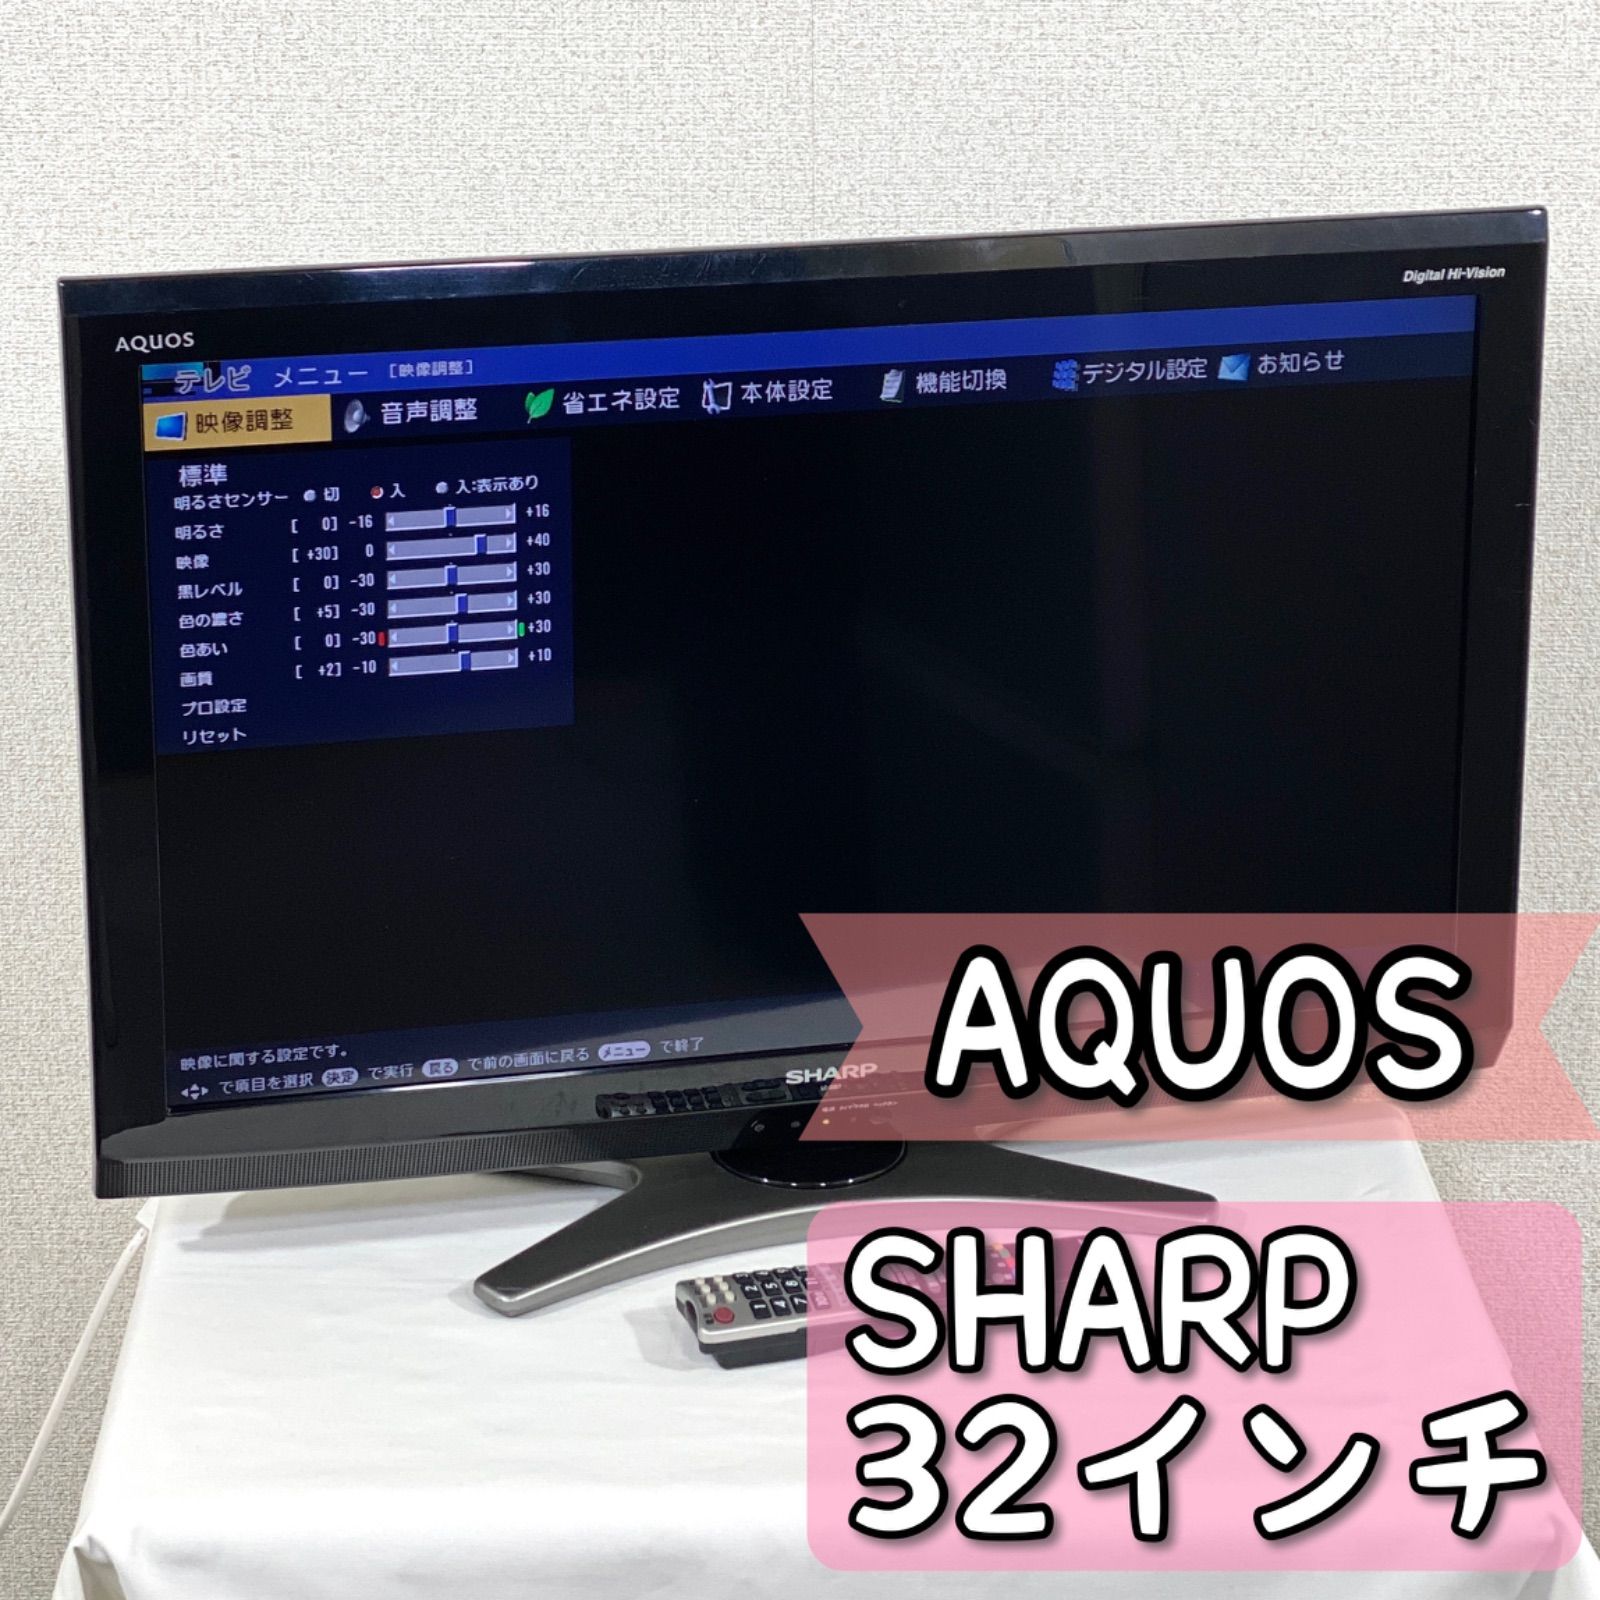 テレビ AQUOS SHARP 2010年製 32型 - テレビ/映像機器